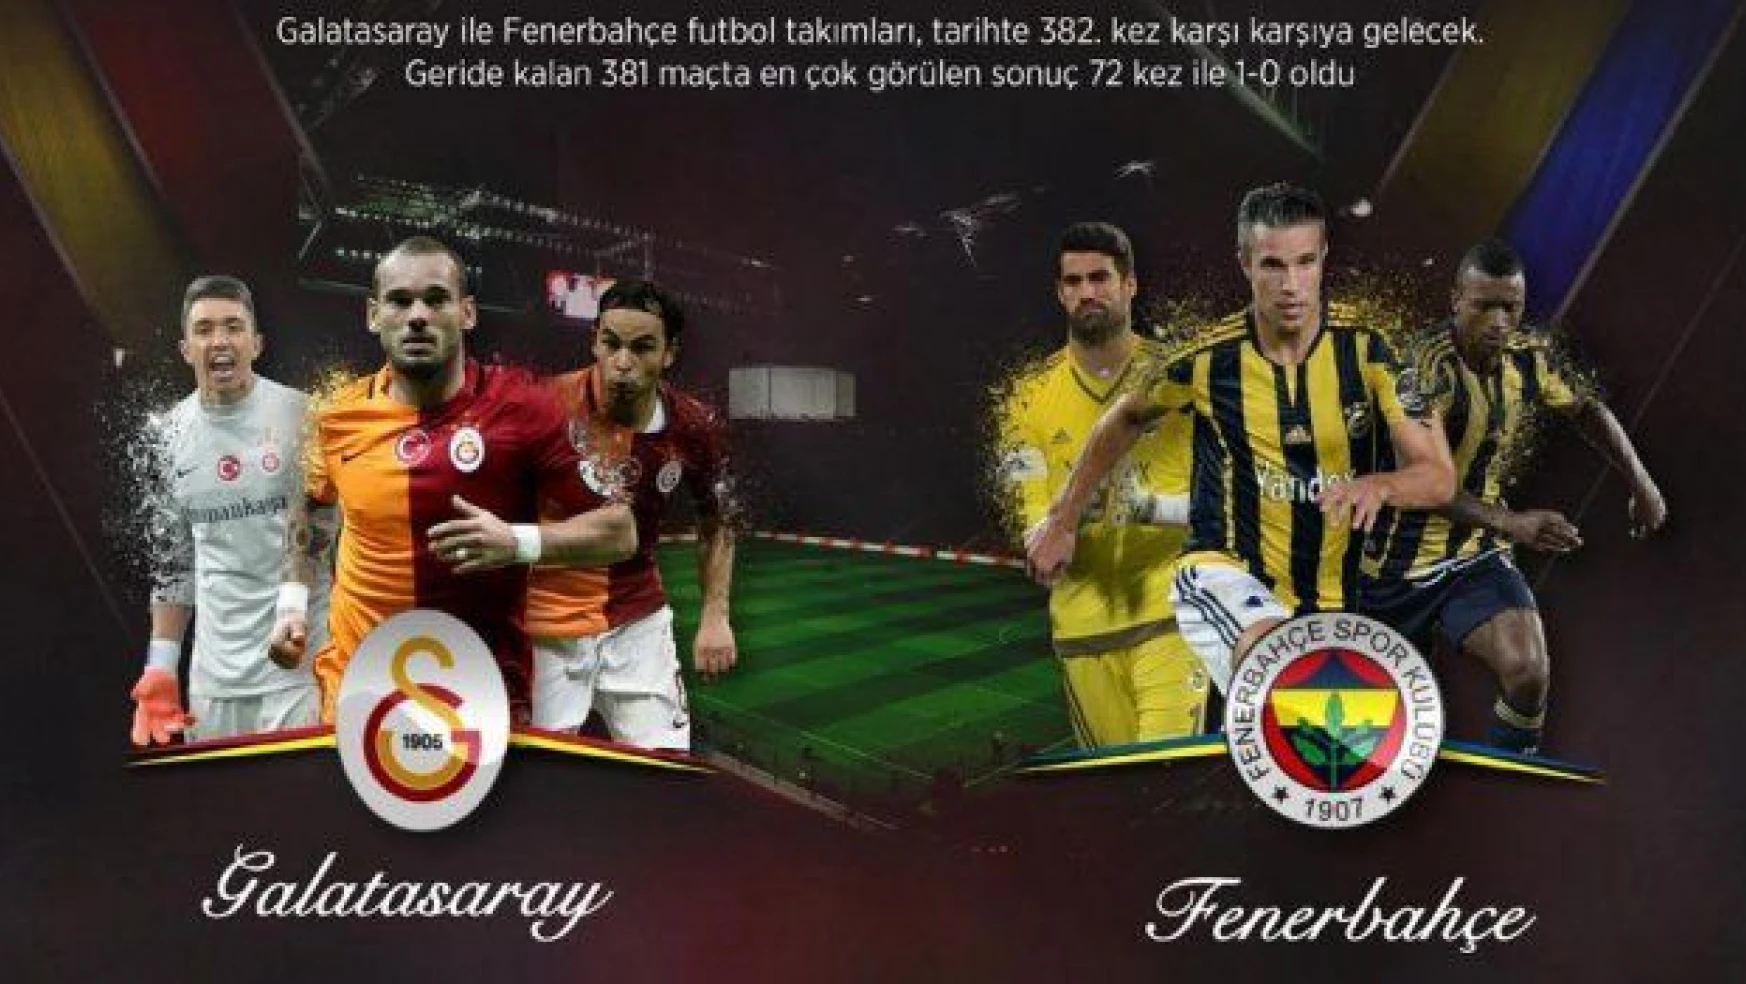 Galatasaray ile Fenerbahçe 382. randevuda